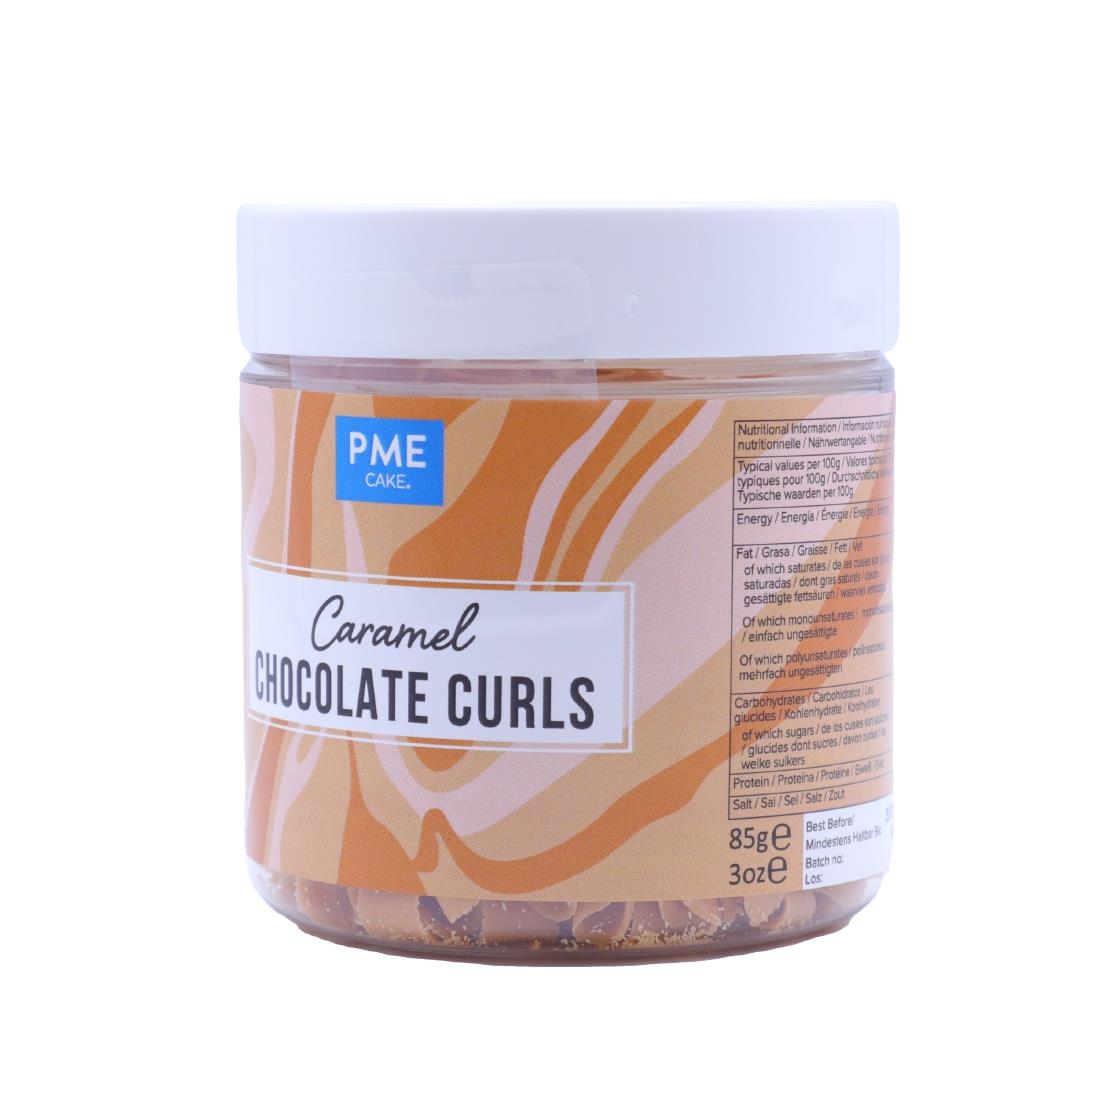 PME Chocolate Curls Caramel 85g (HU285)